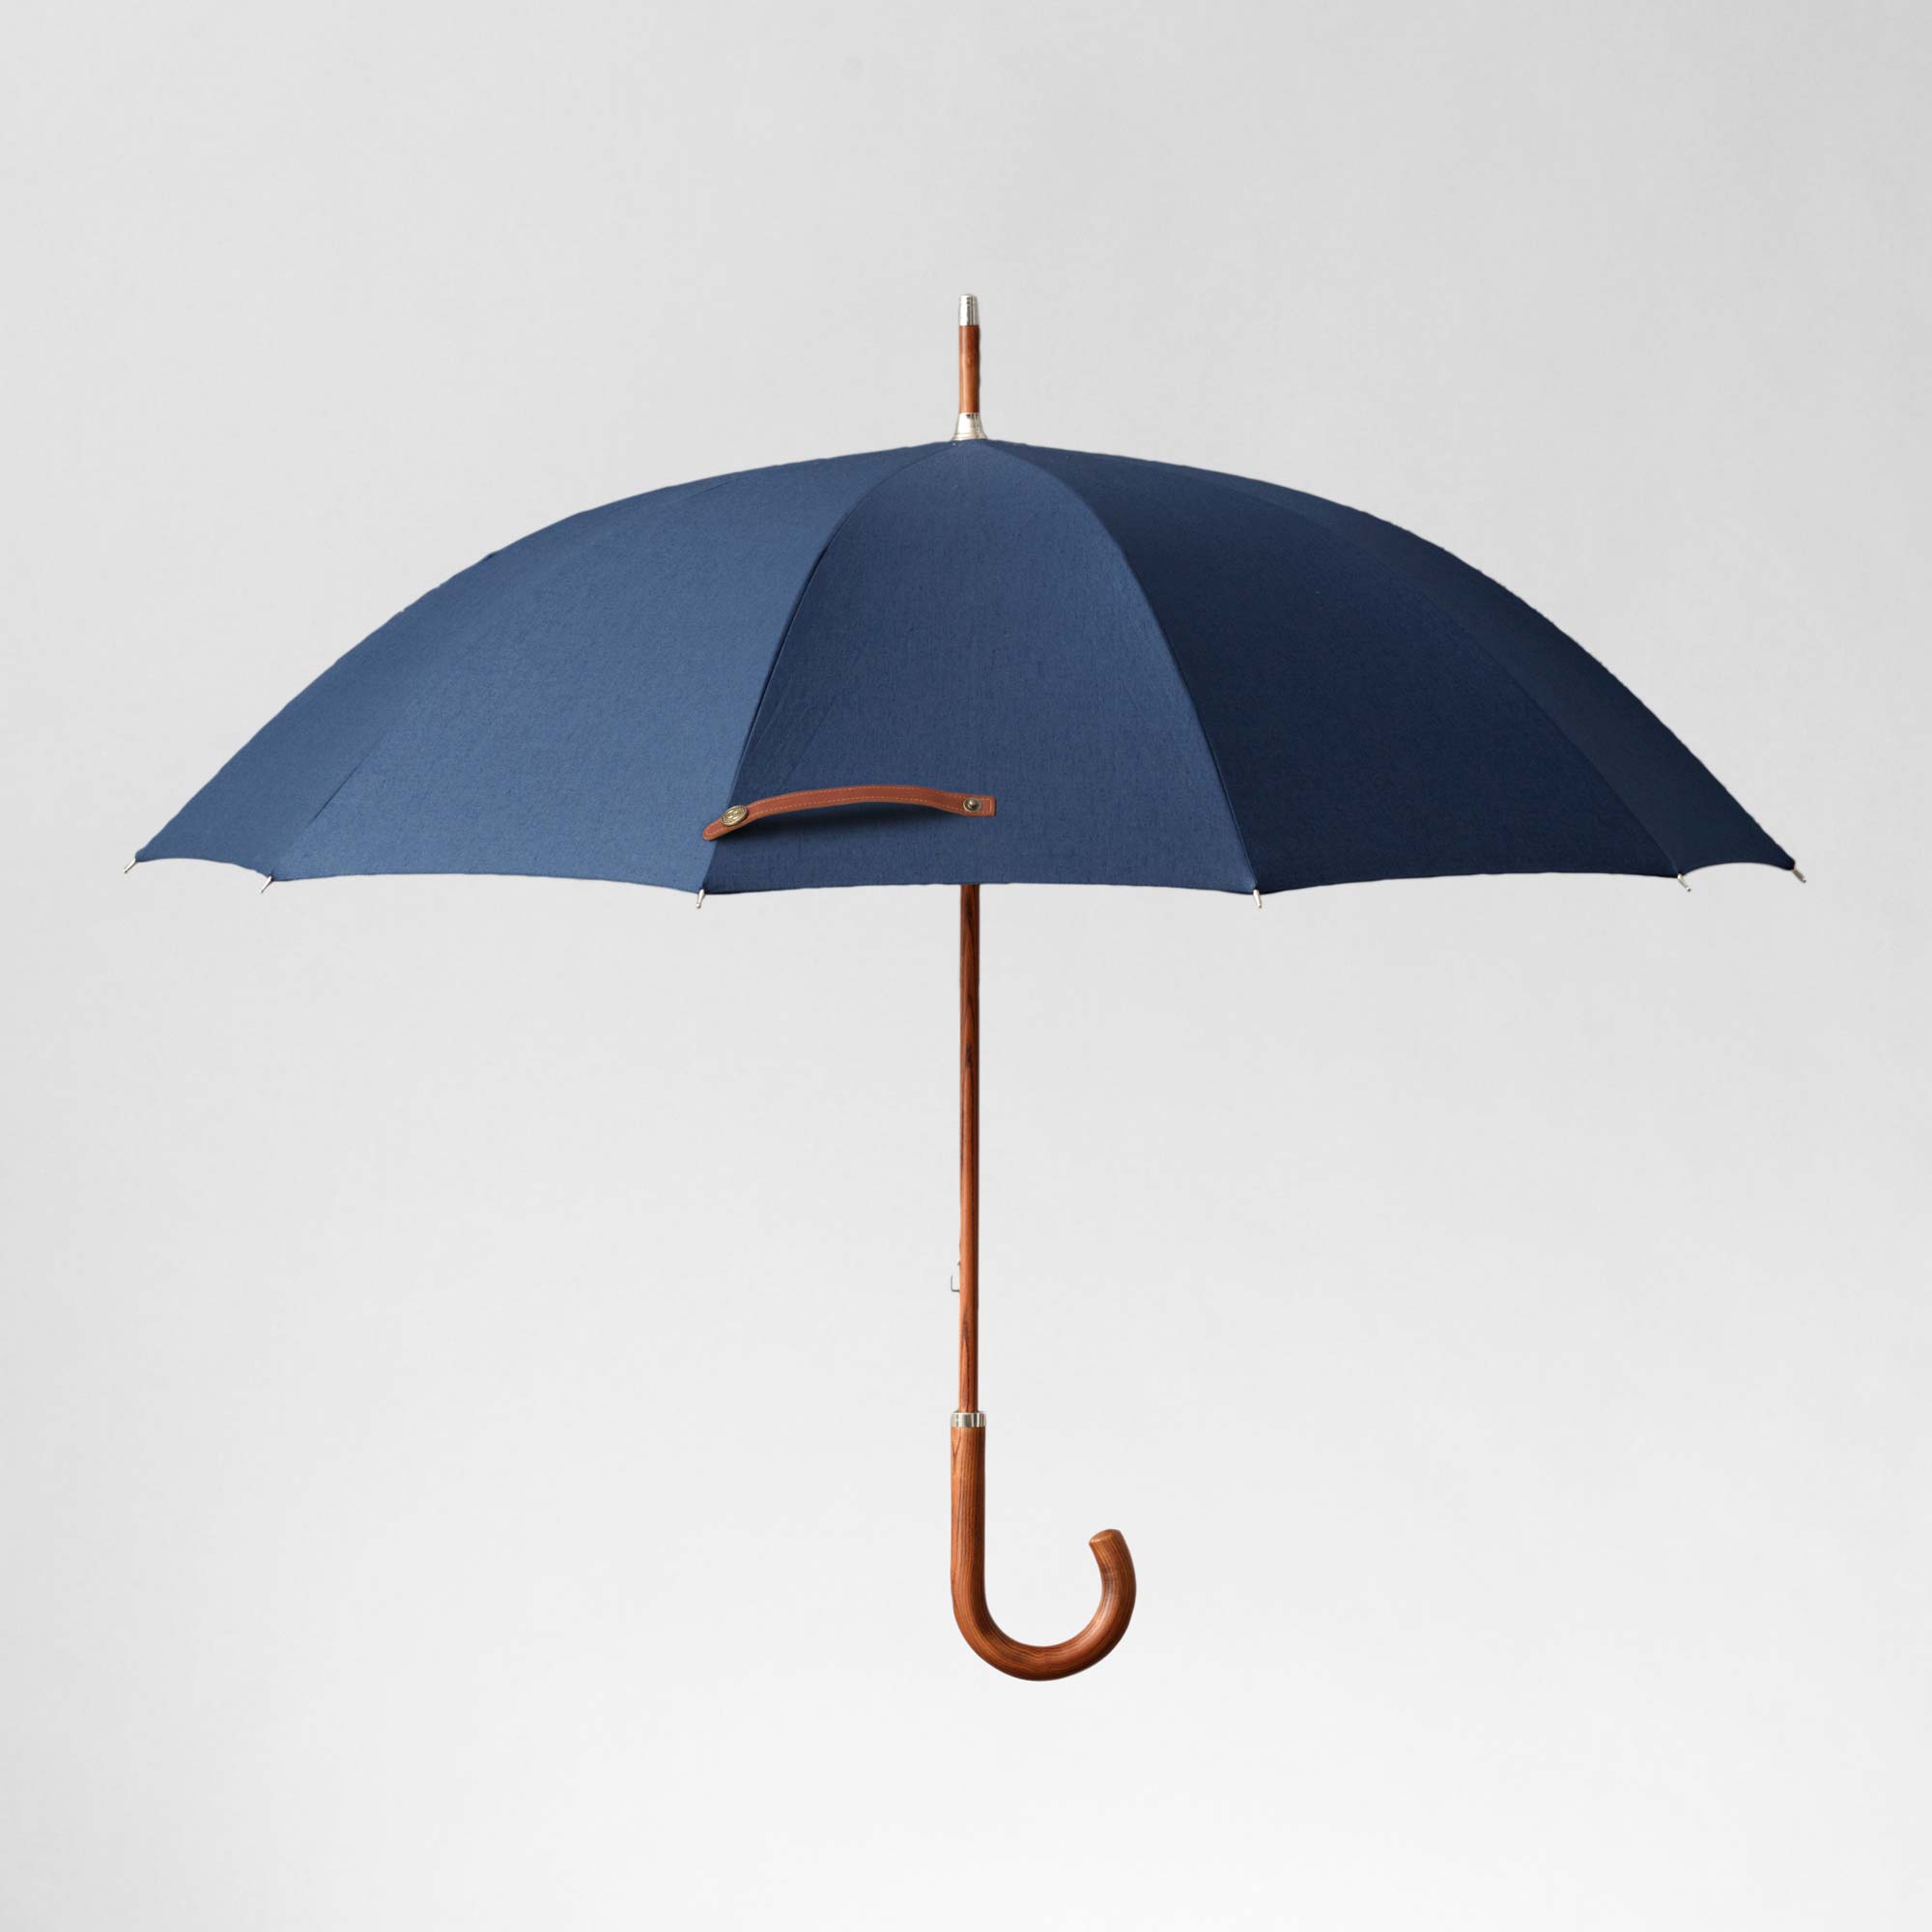 A high quality classic blue umbrella